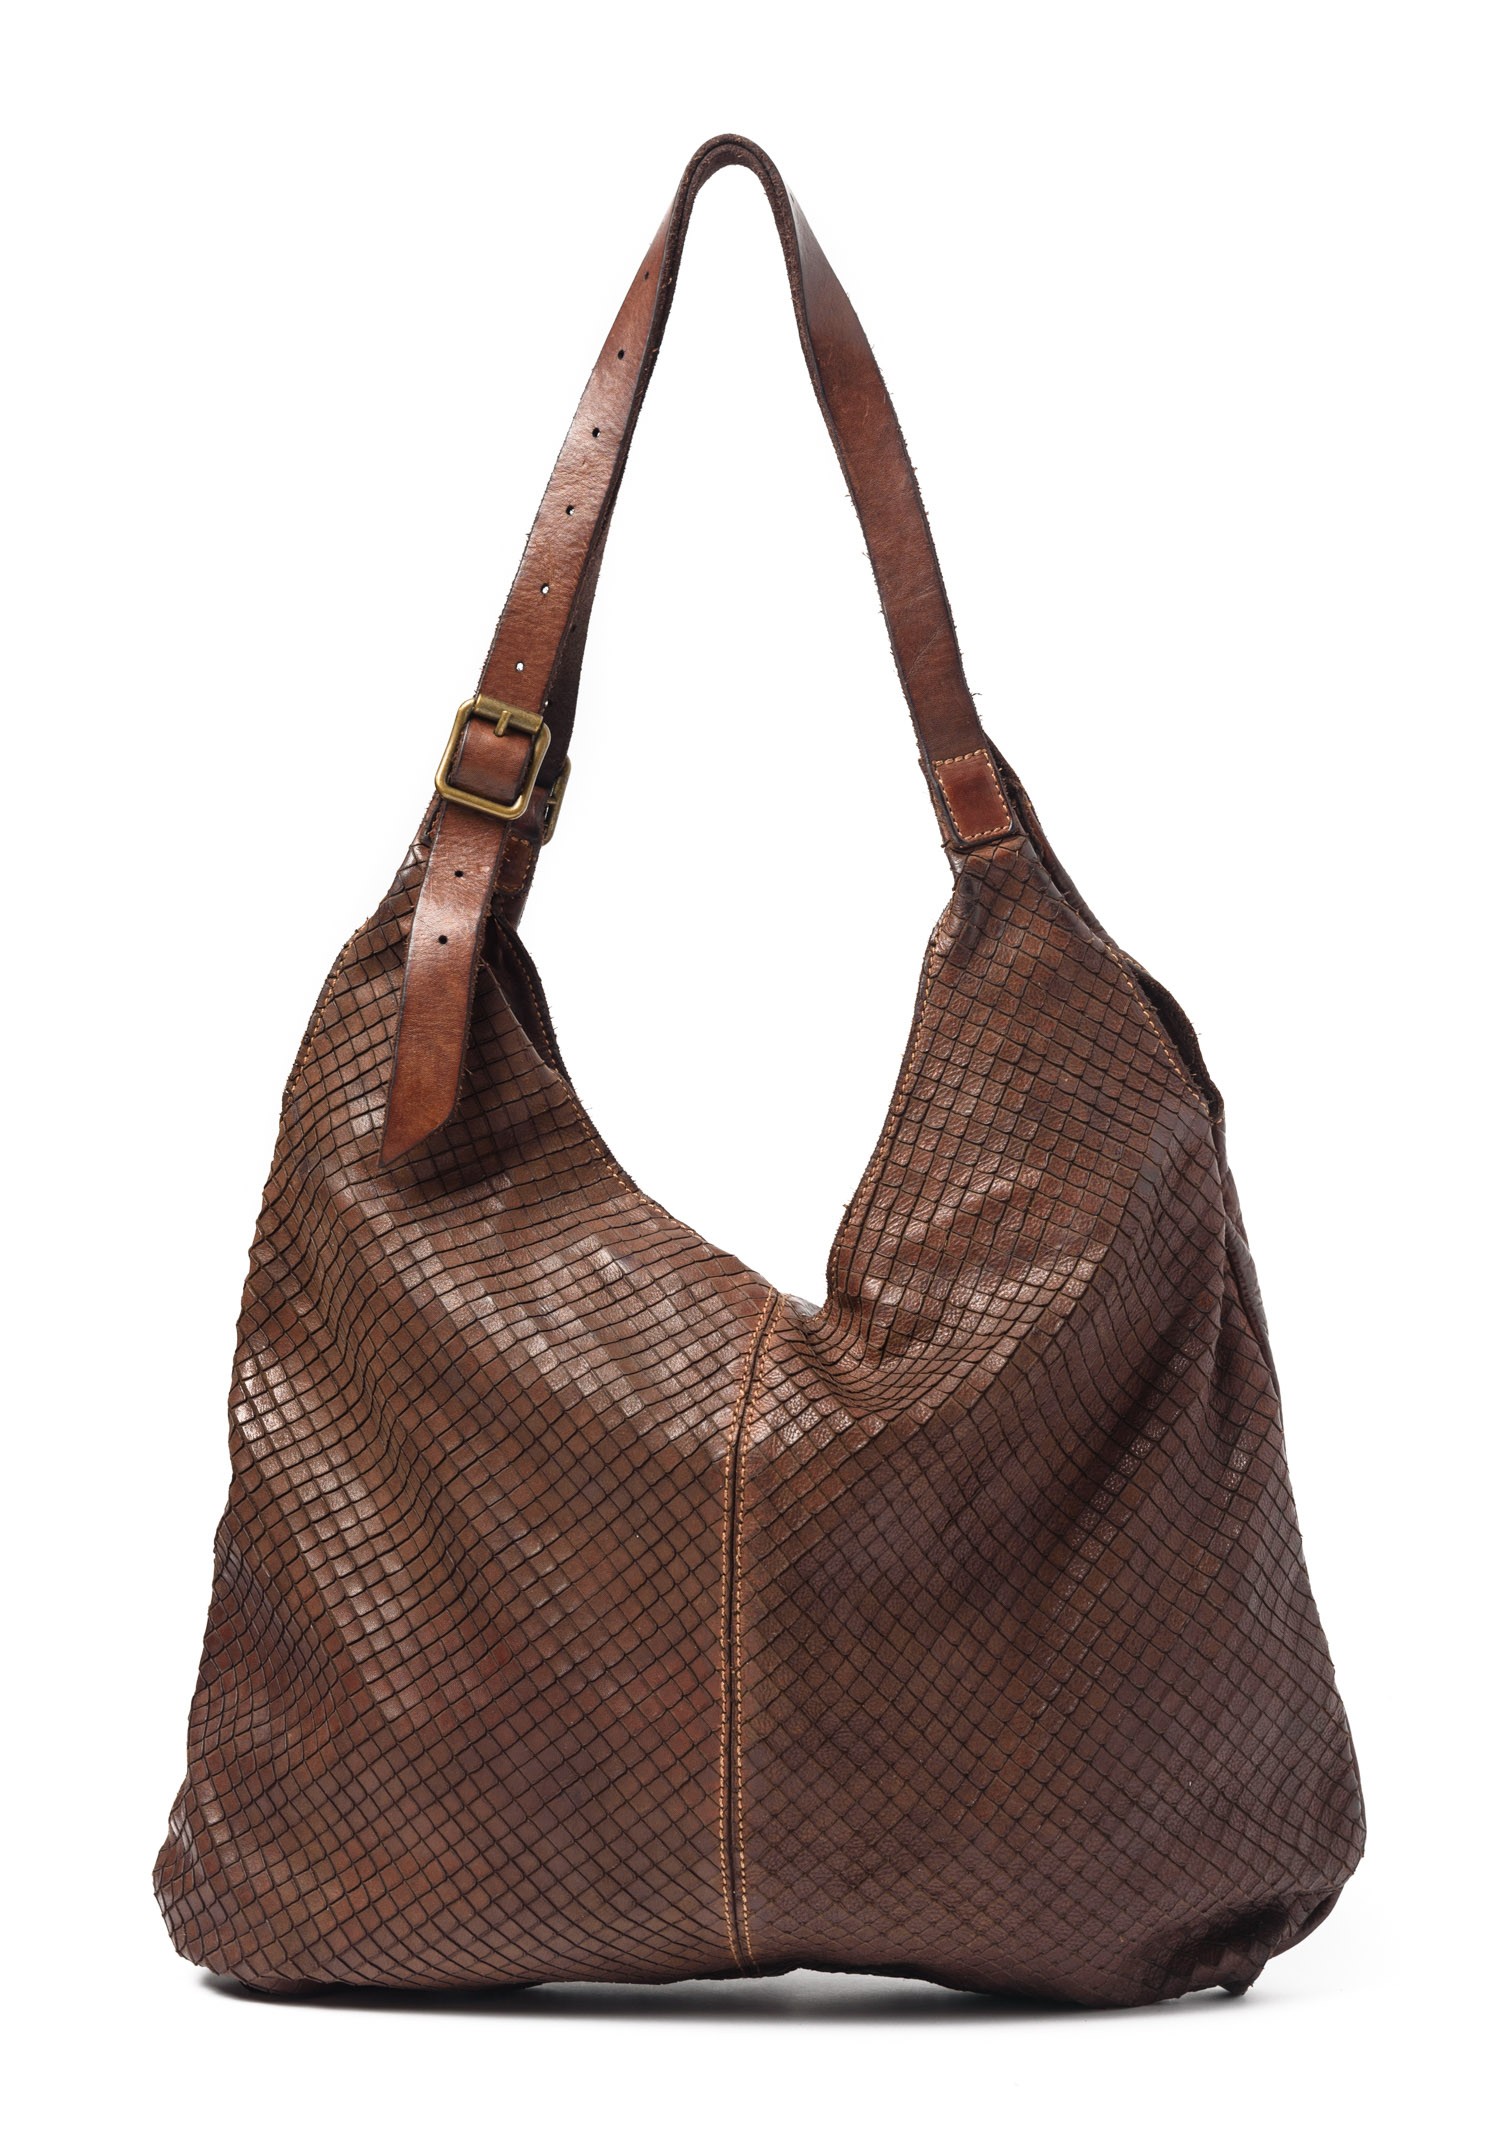 Campomaggi Scored Leather Hobo Bag in Dark Brown | Santa Fe Dry Goods ...